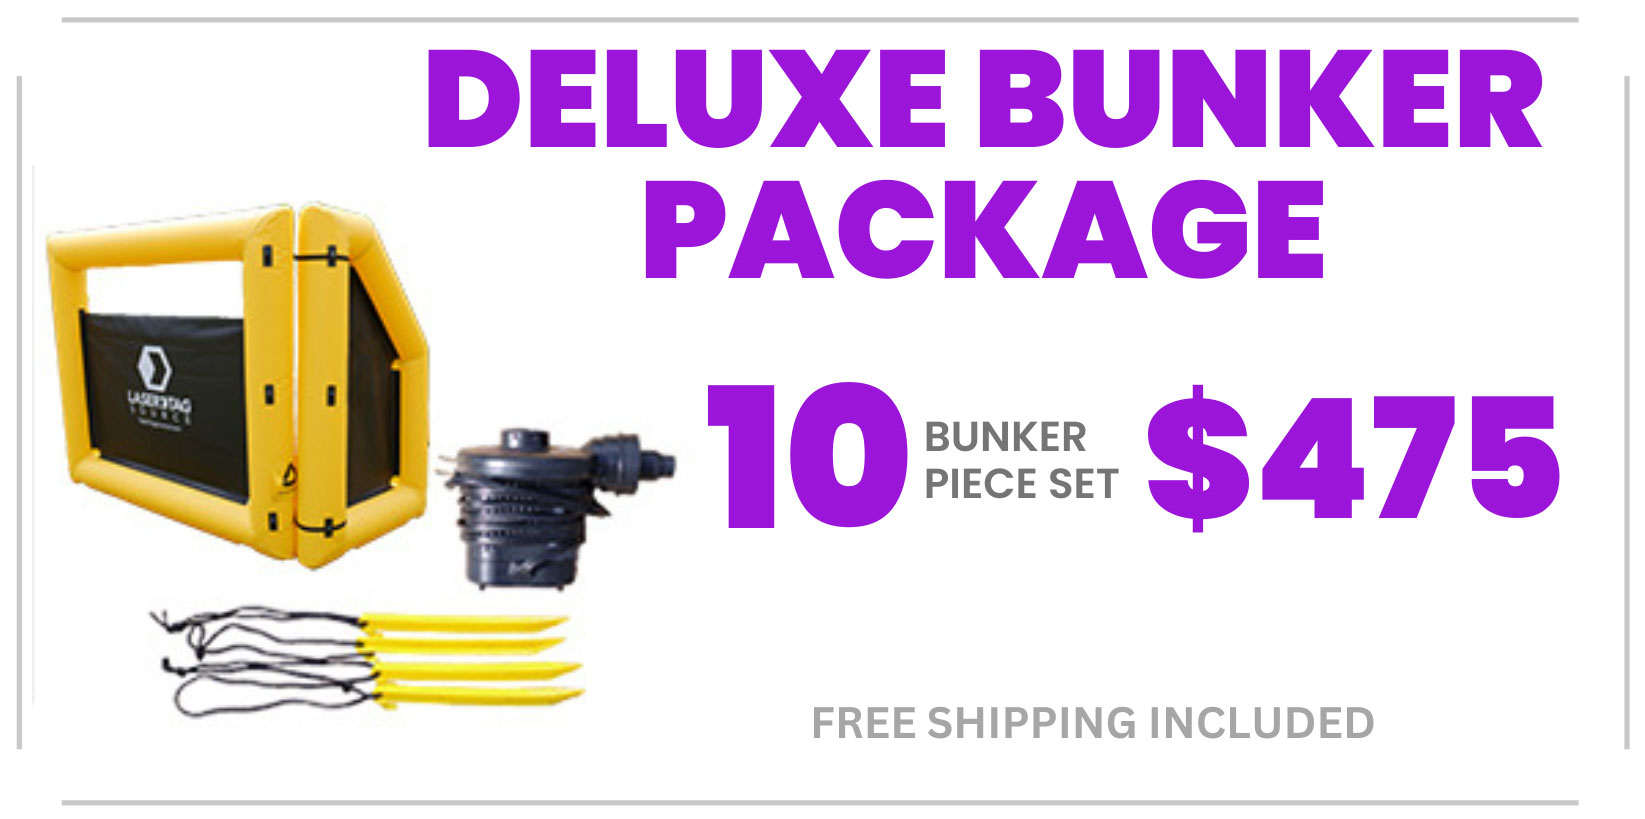 Deluxe Bunker